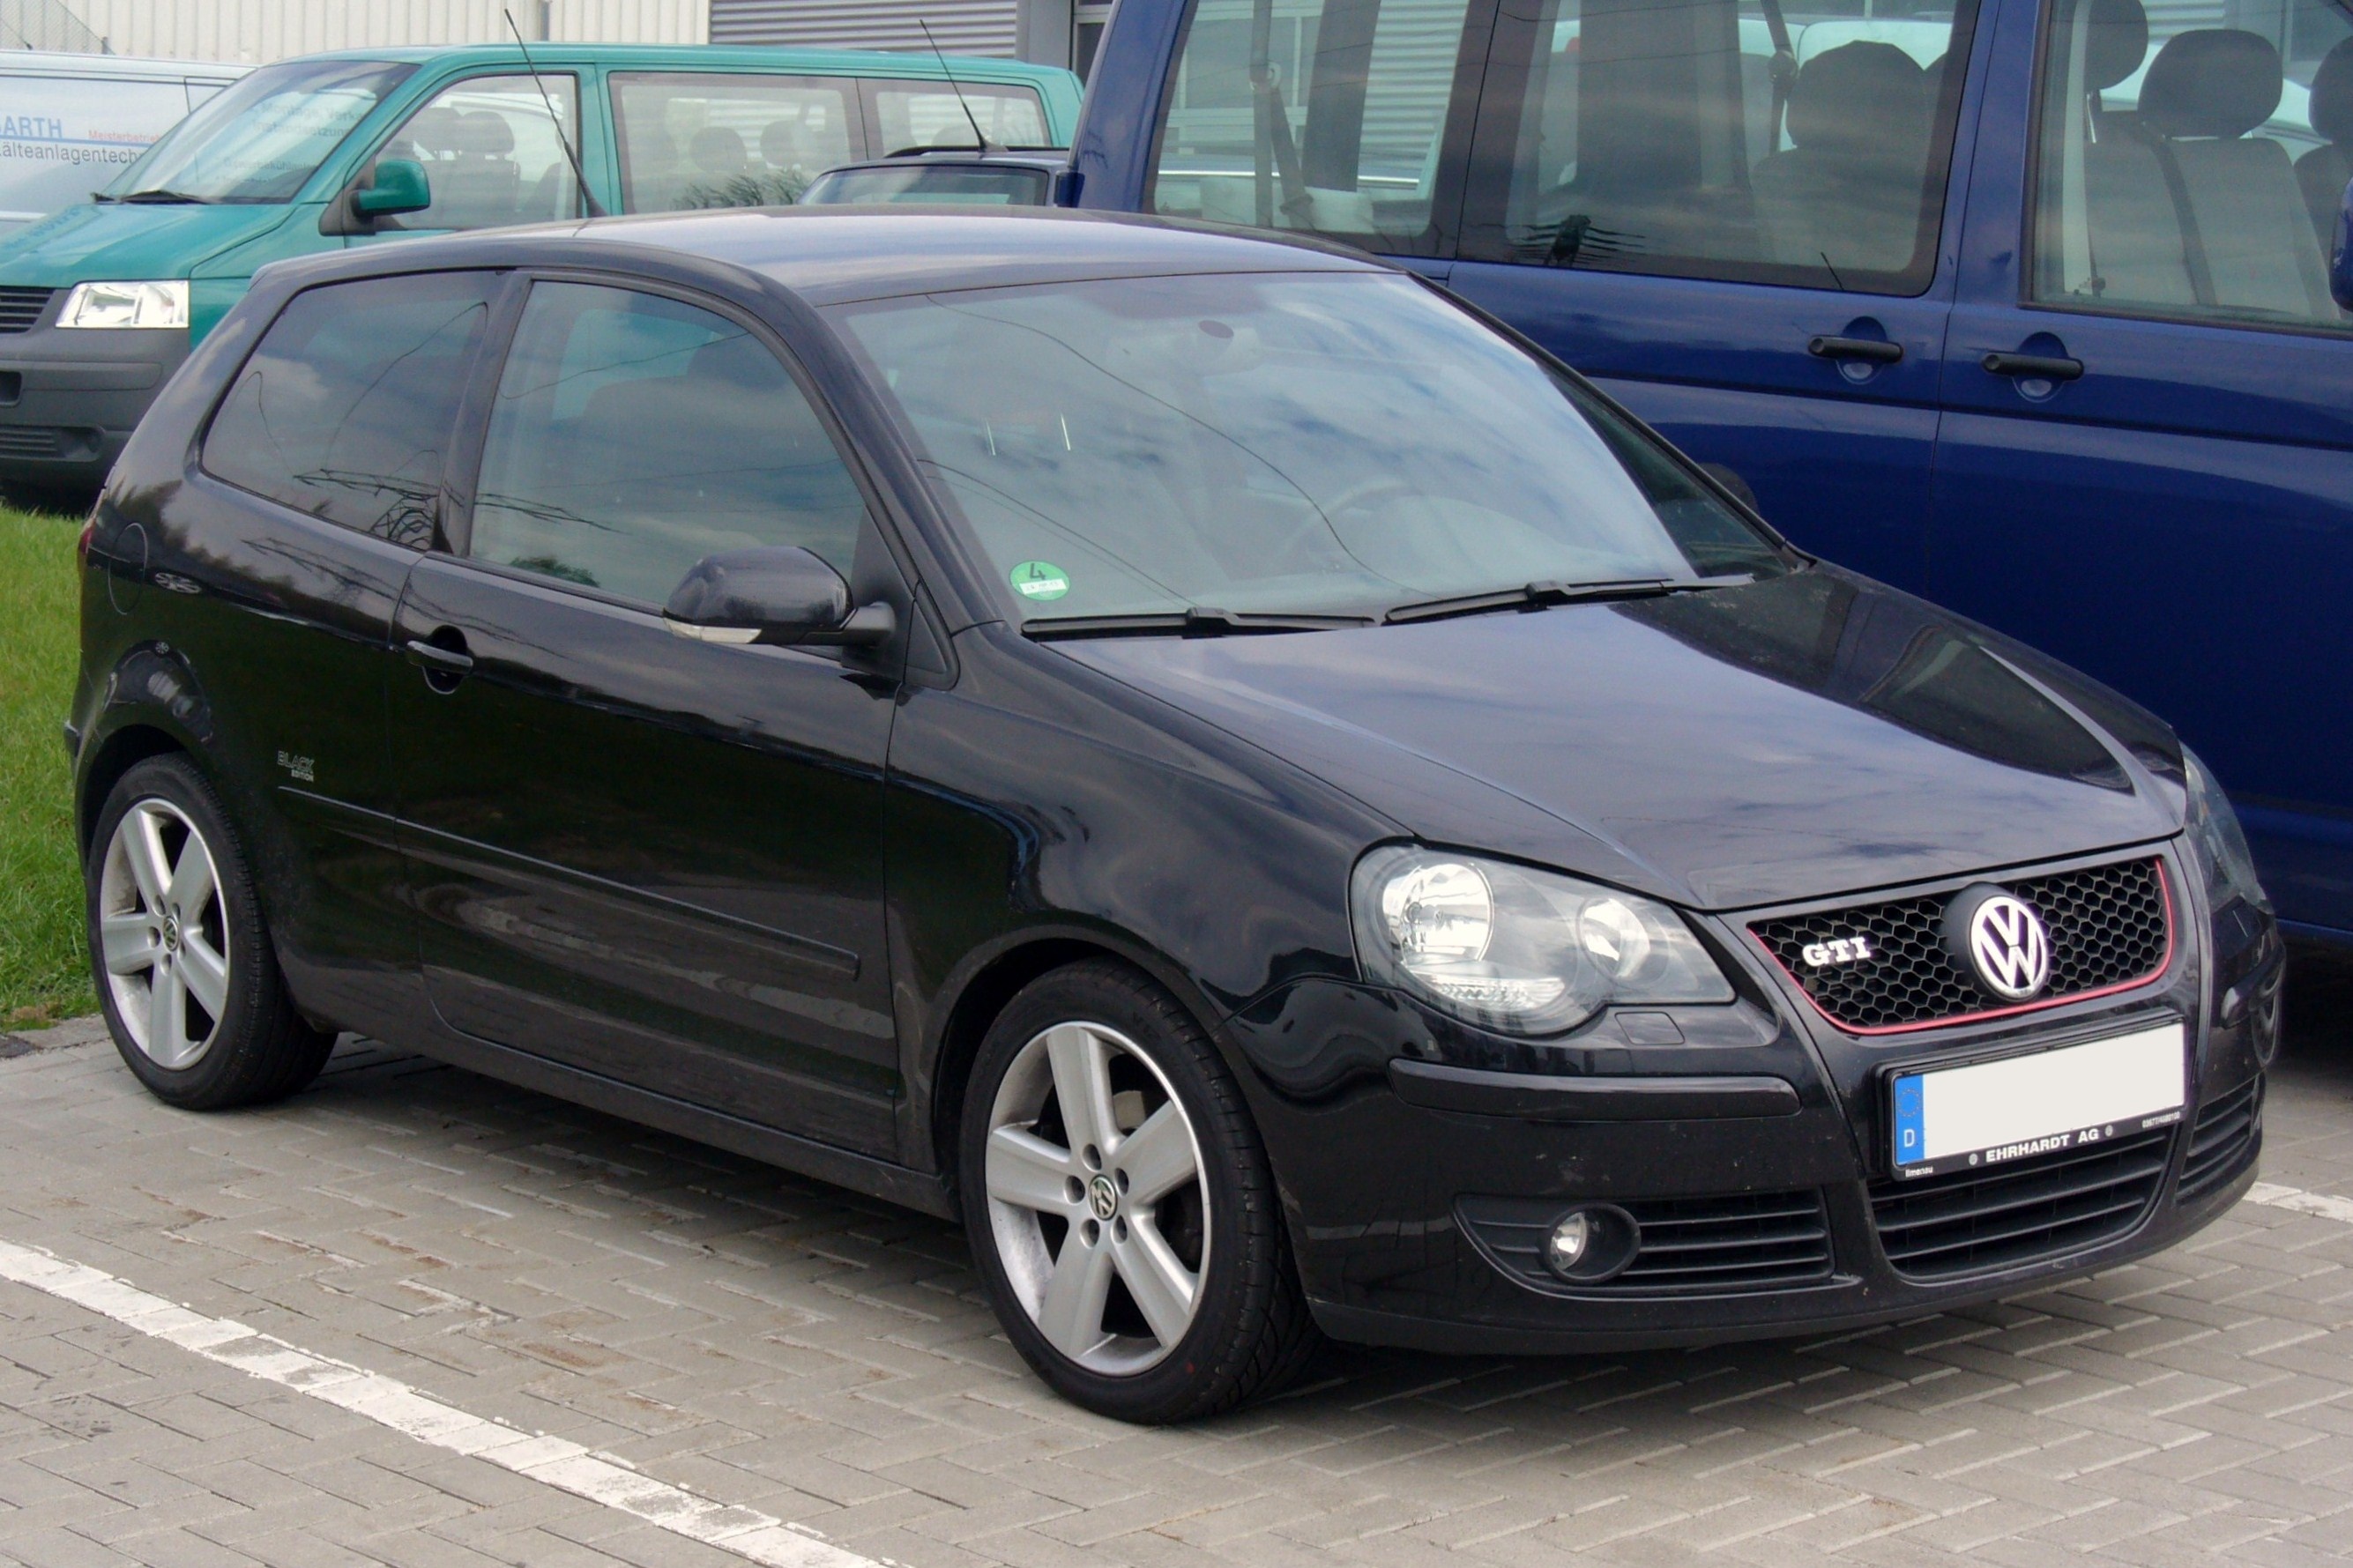 File:VW Polo IV (9N3) black.jpg - Wikimedia Commons